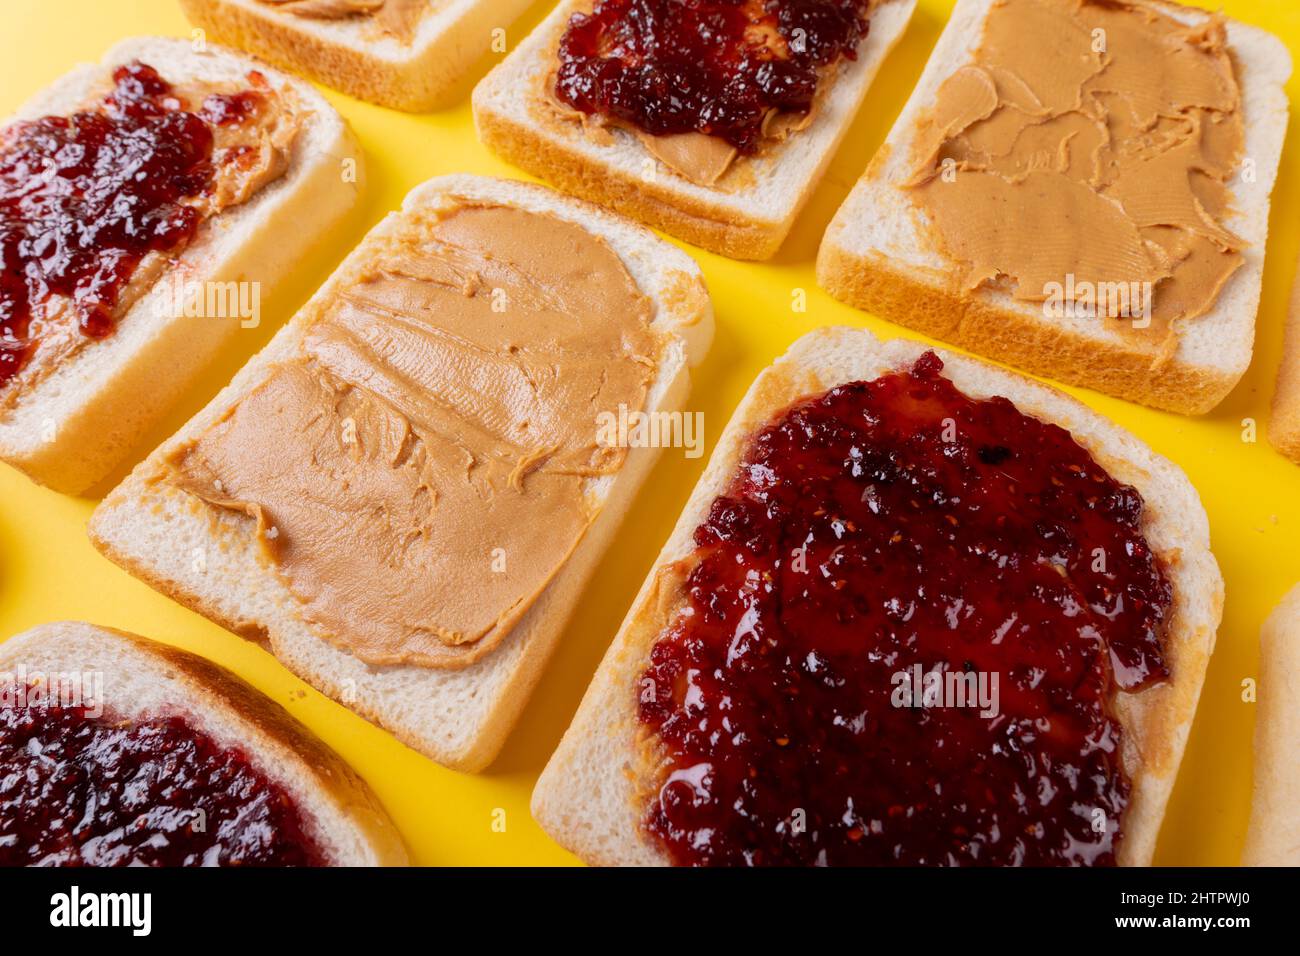 Eine Aufnahme von Brotscheiben mit Konserven und Erdnussbutter, die alternativ angeordnet sind Stockfoto